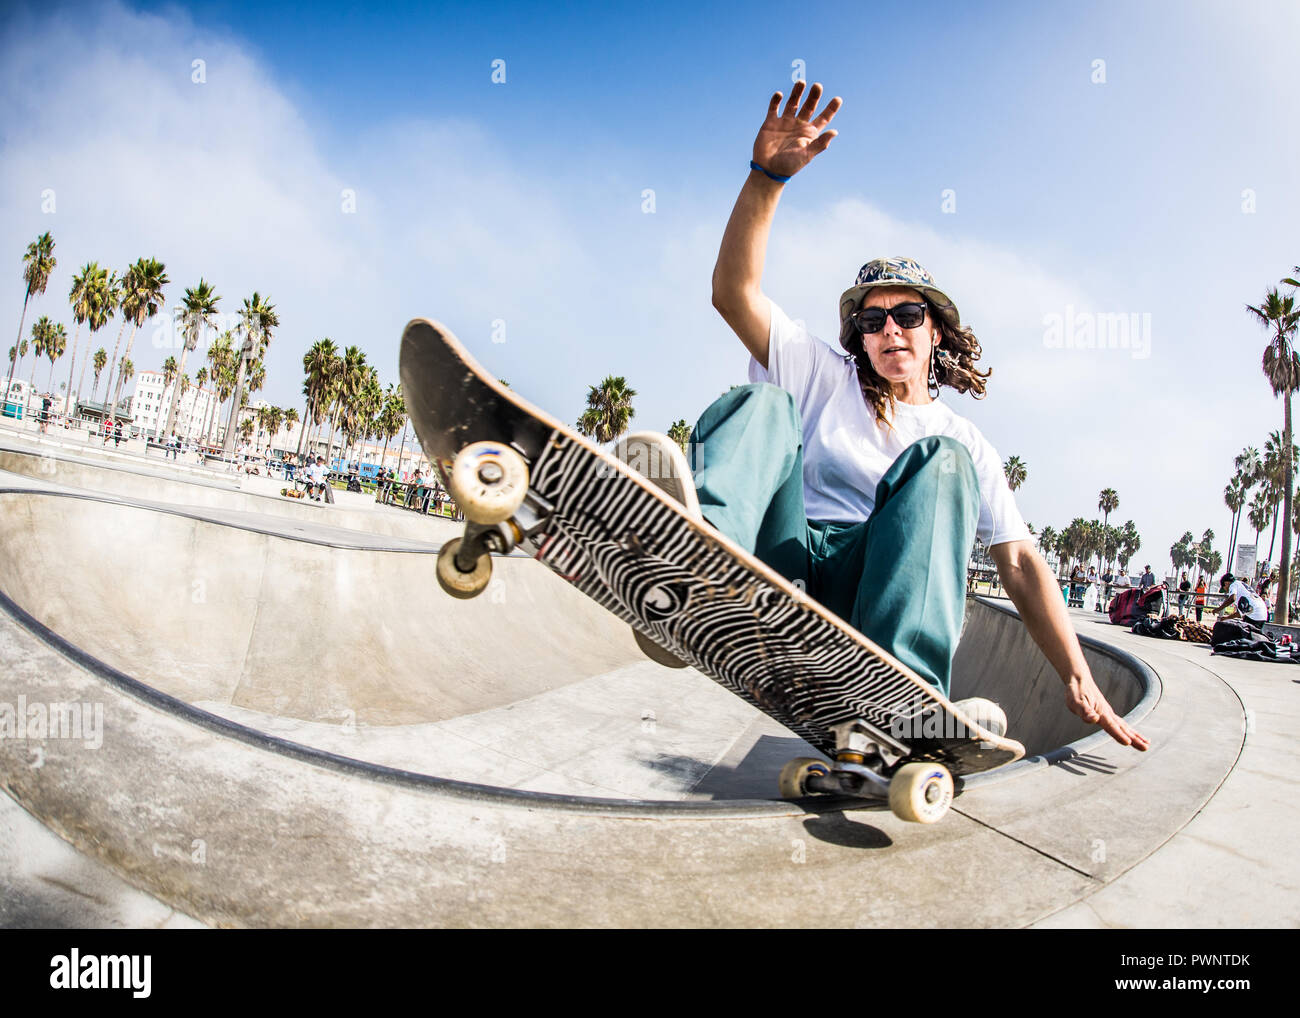 Girl Skateboarder at Venice Skatepark Venice Beach California Stock Photo -  Alamy